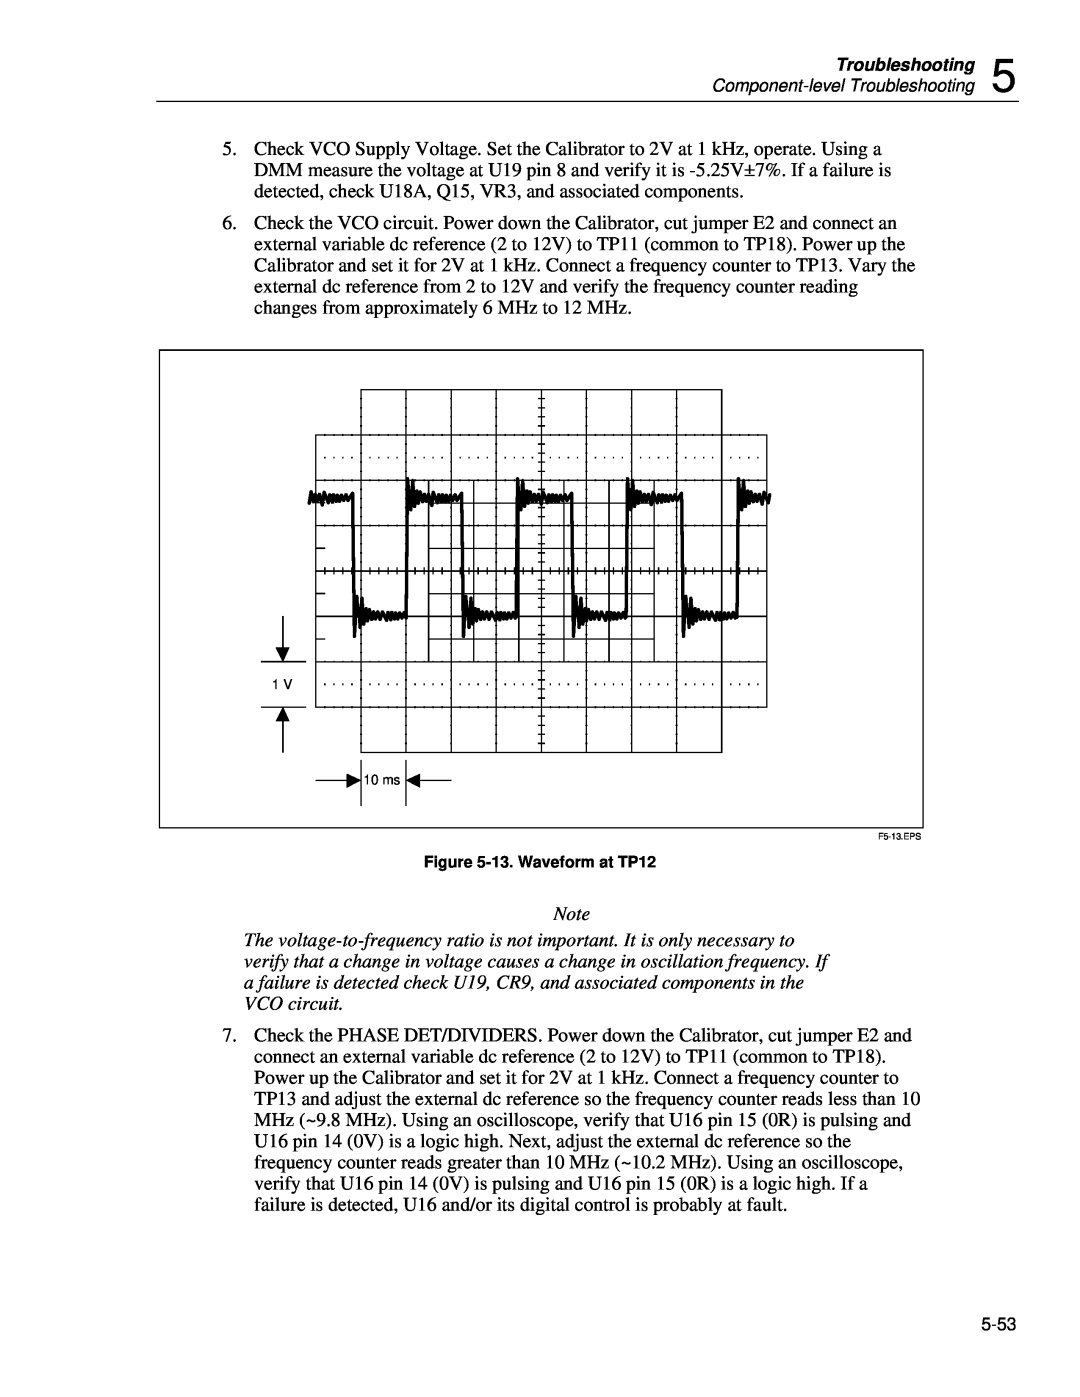 Fluke 5720A service manual 13. Waveform at TP12, F5-13.EPS 